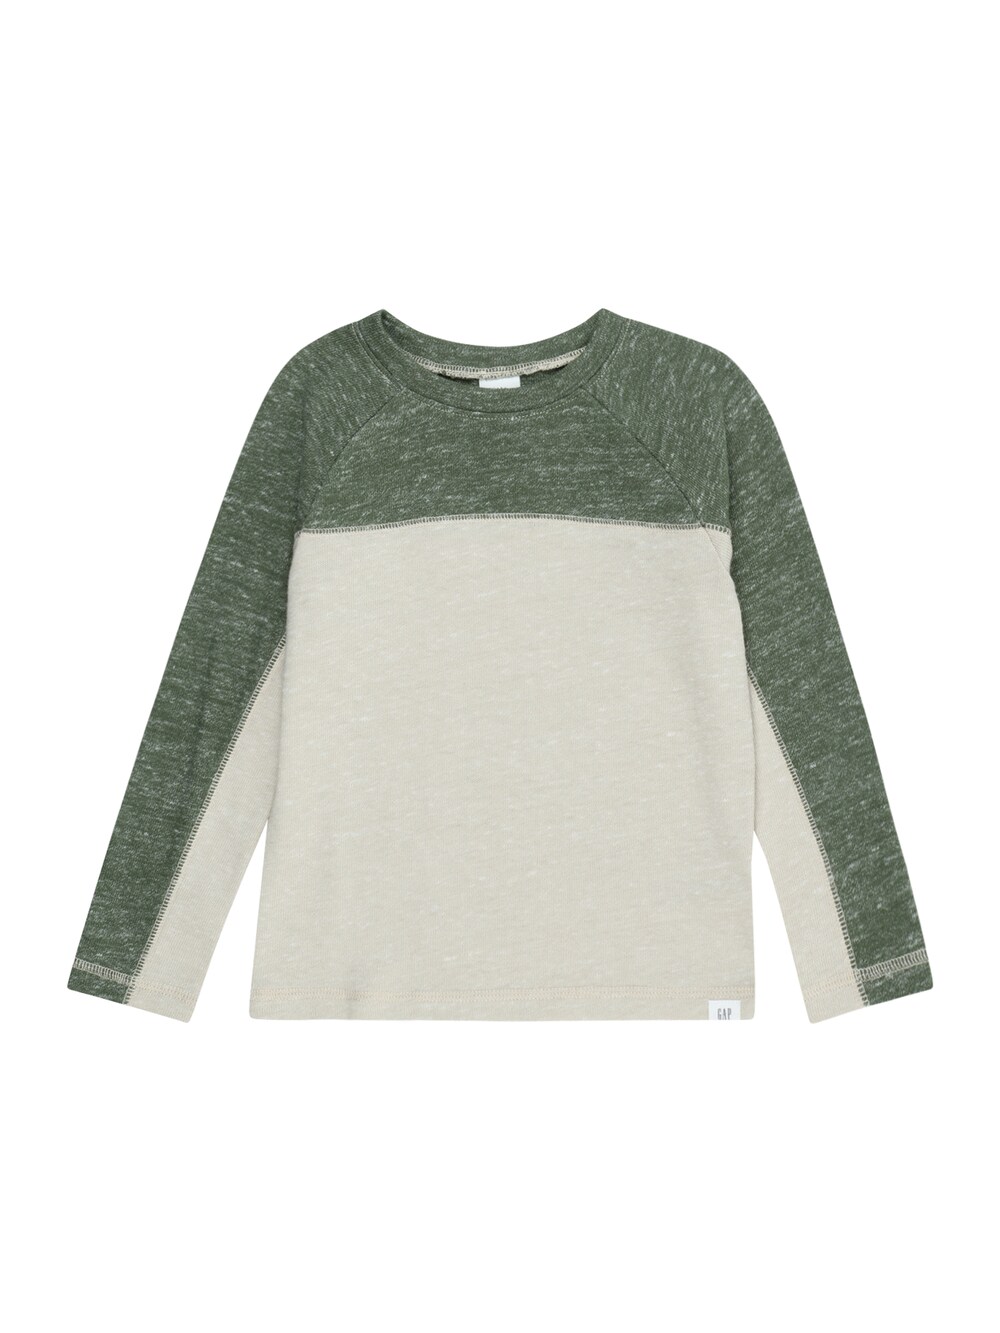 Рубашка Gap, пастельно-зеленый/пестрый зеленый